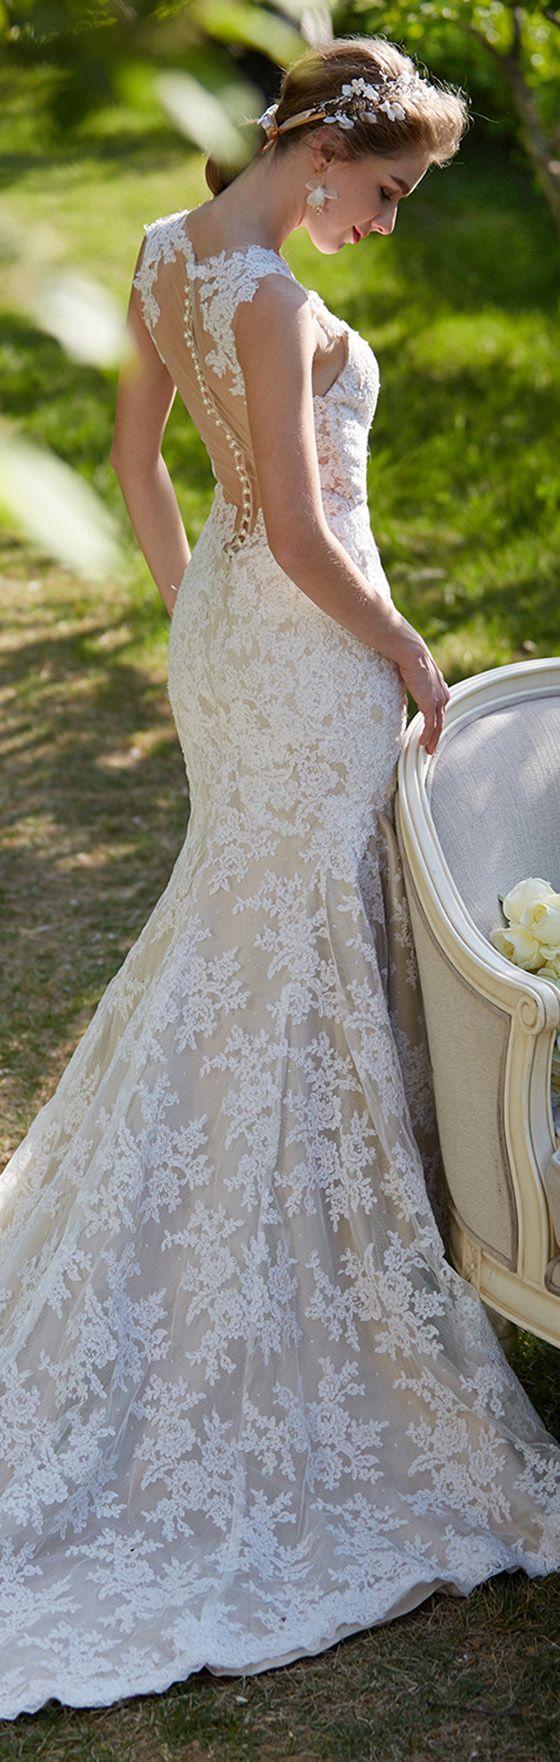 زفاف - Mermaid / Trumpet Plunging Neckline Court Train Lace Wedding Dress With Appliques Button By LAN TING BRIDE®